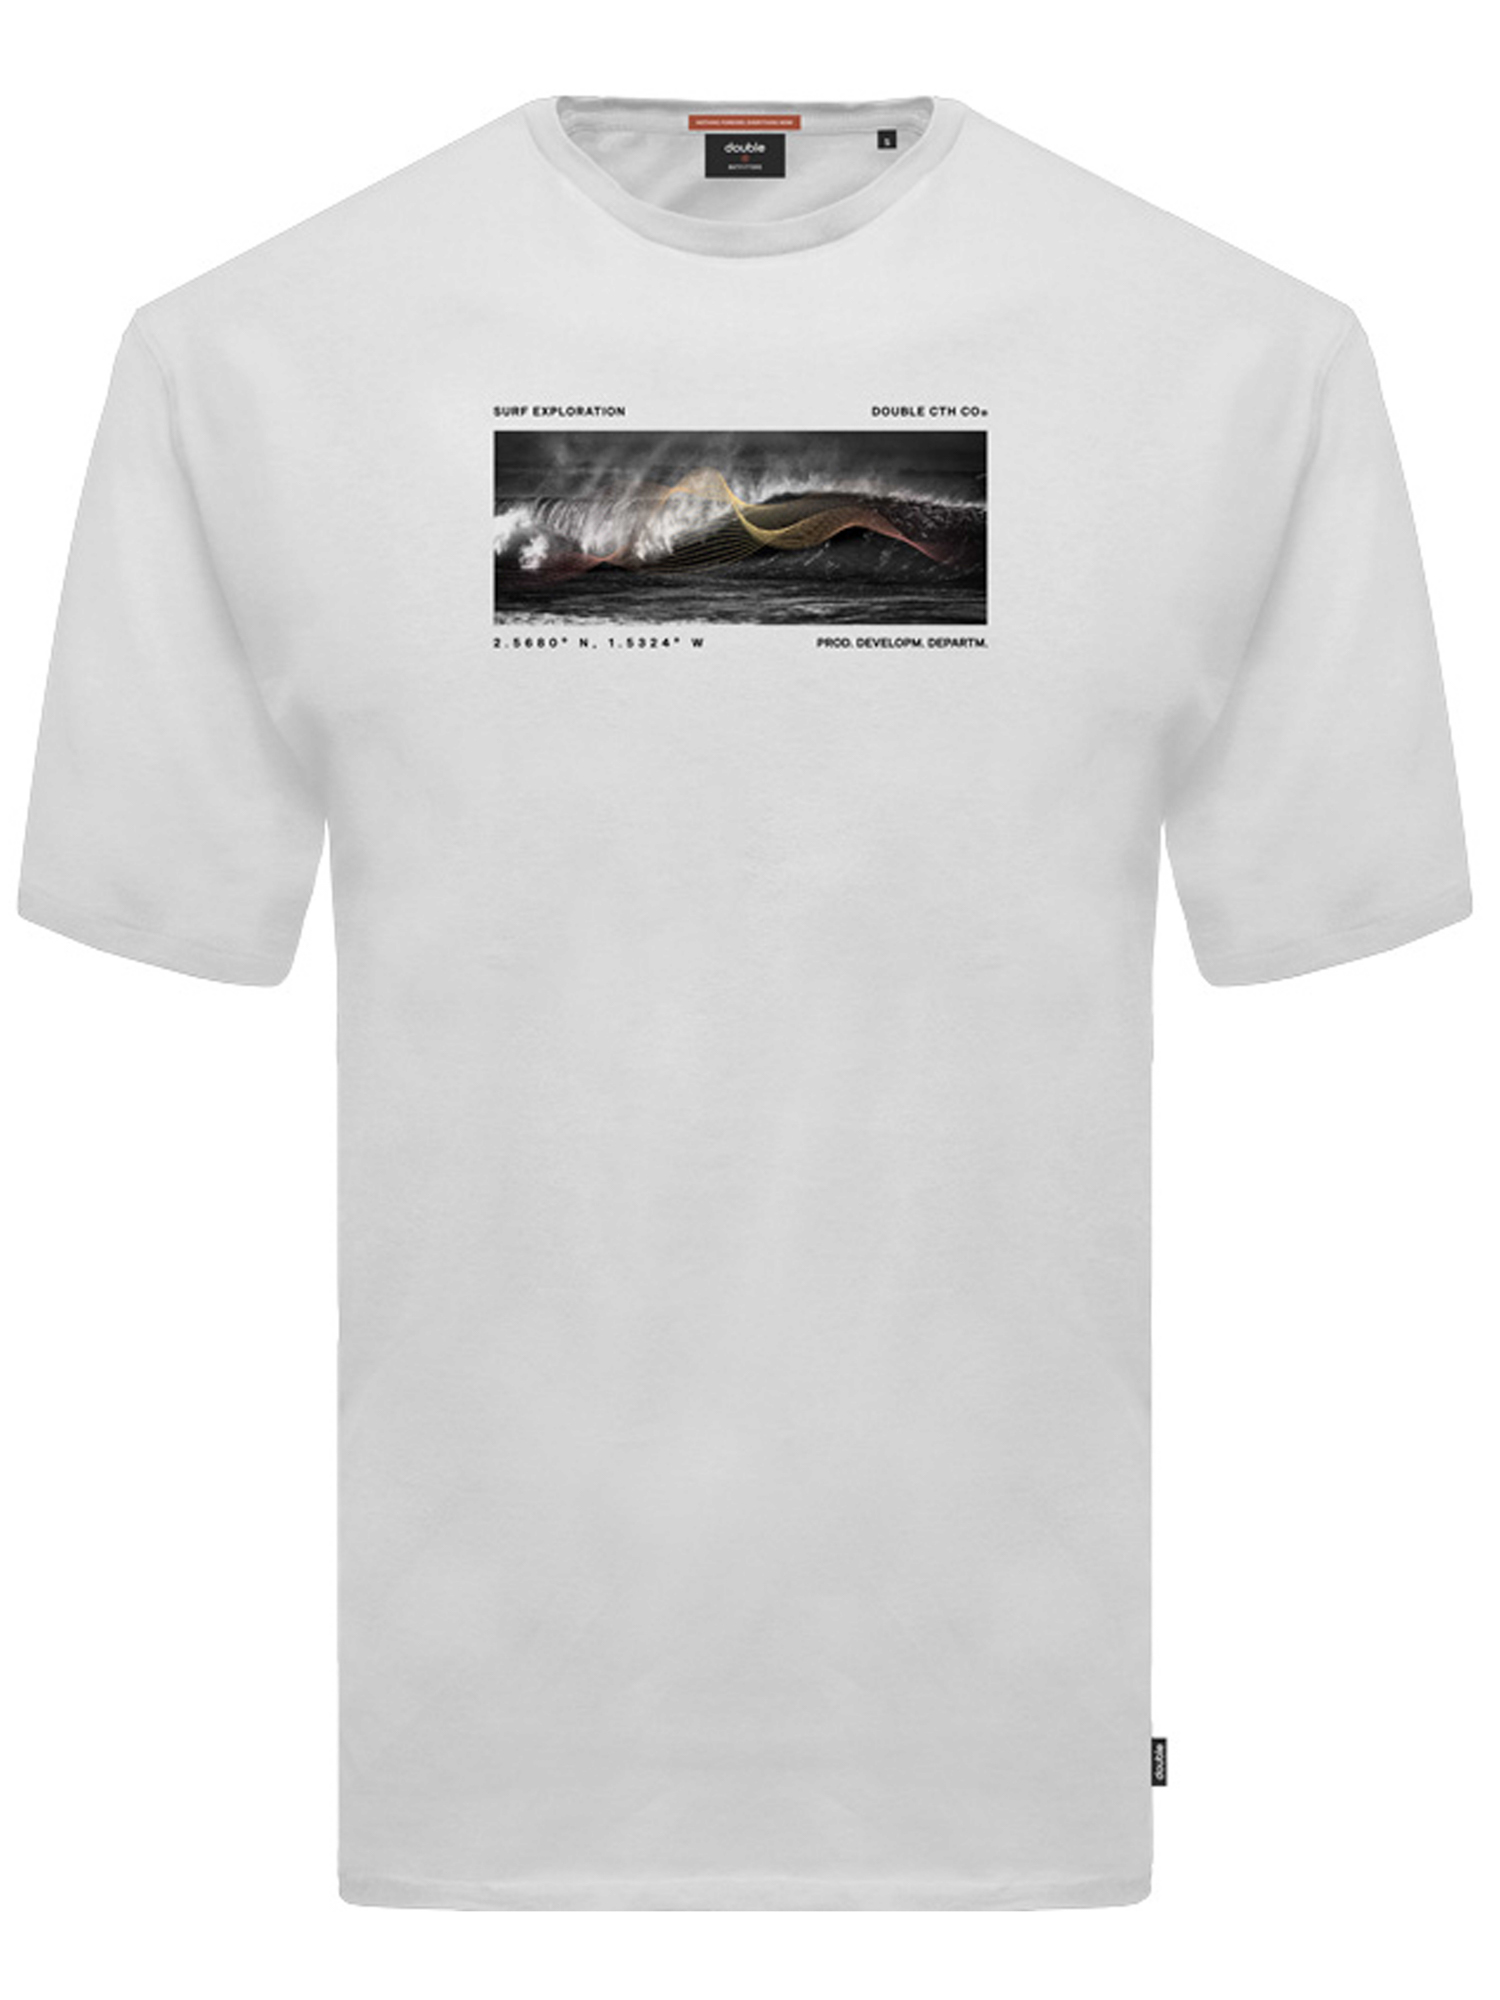 Ανδρική Μπλούζα T-Shirts Μακό Plus Size - Άσπρο